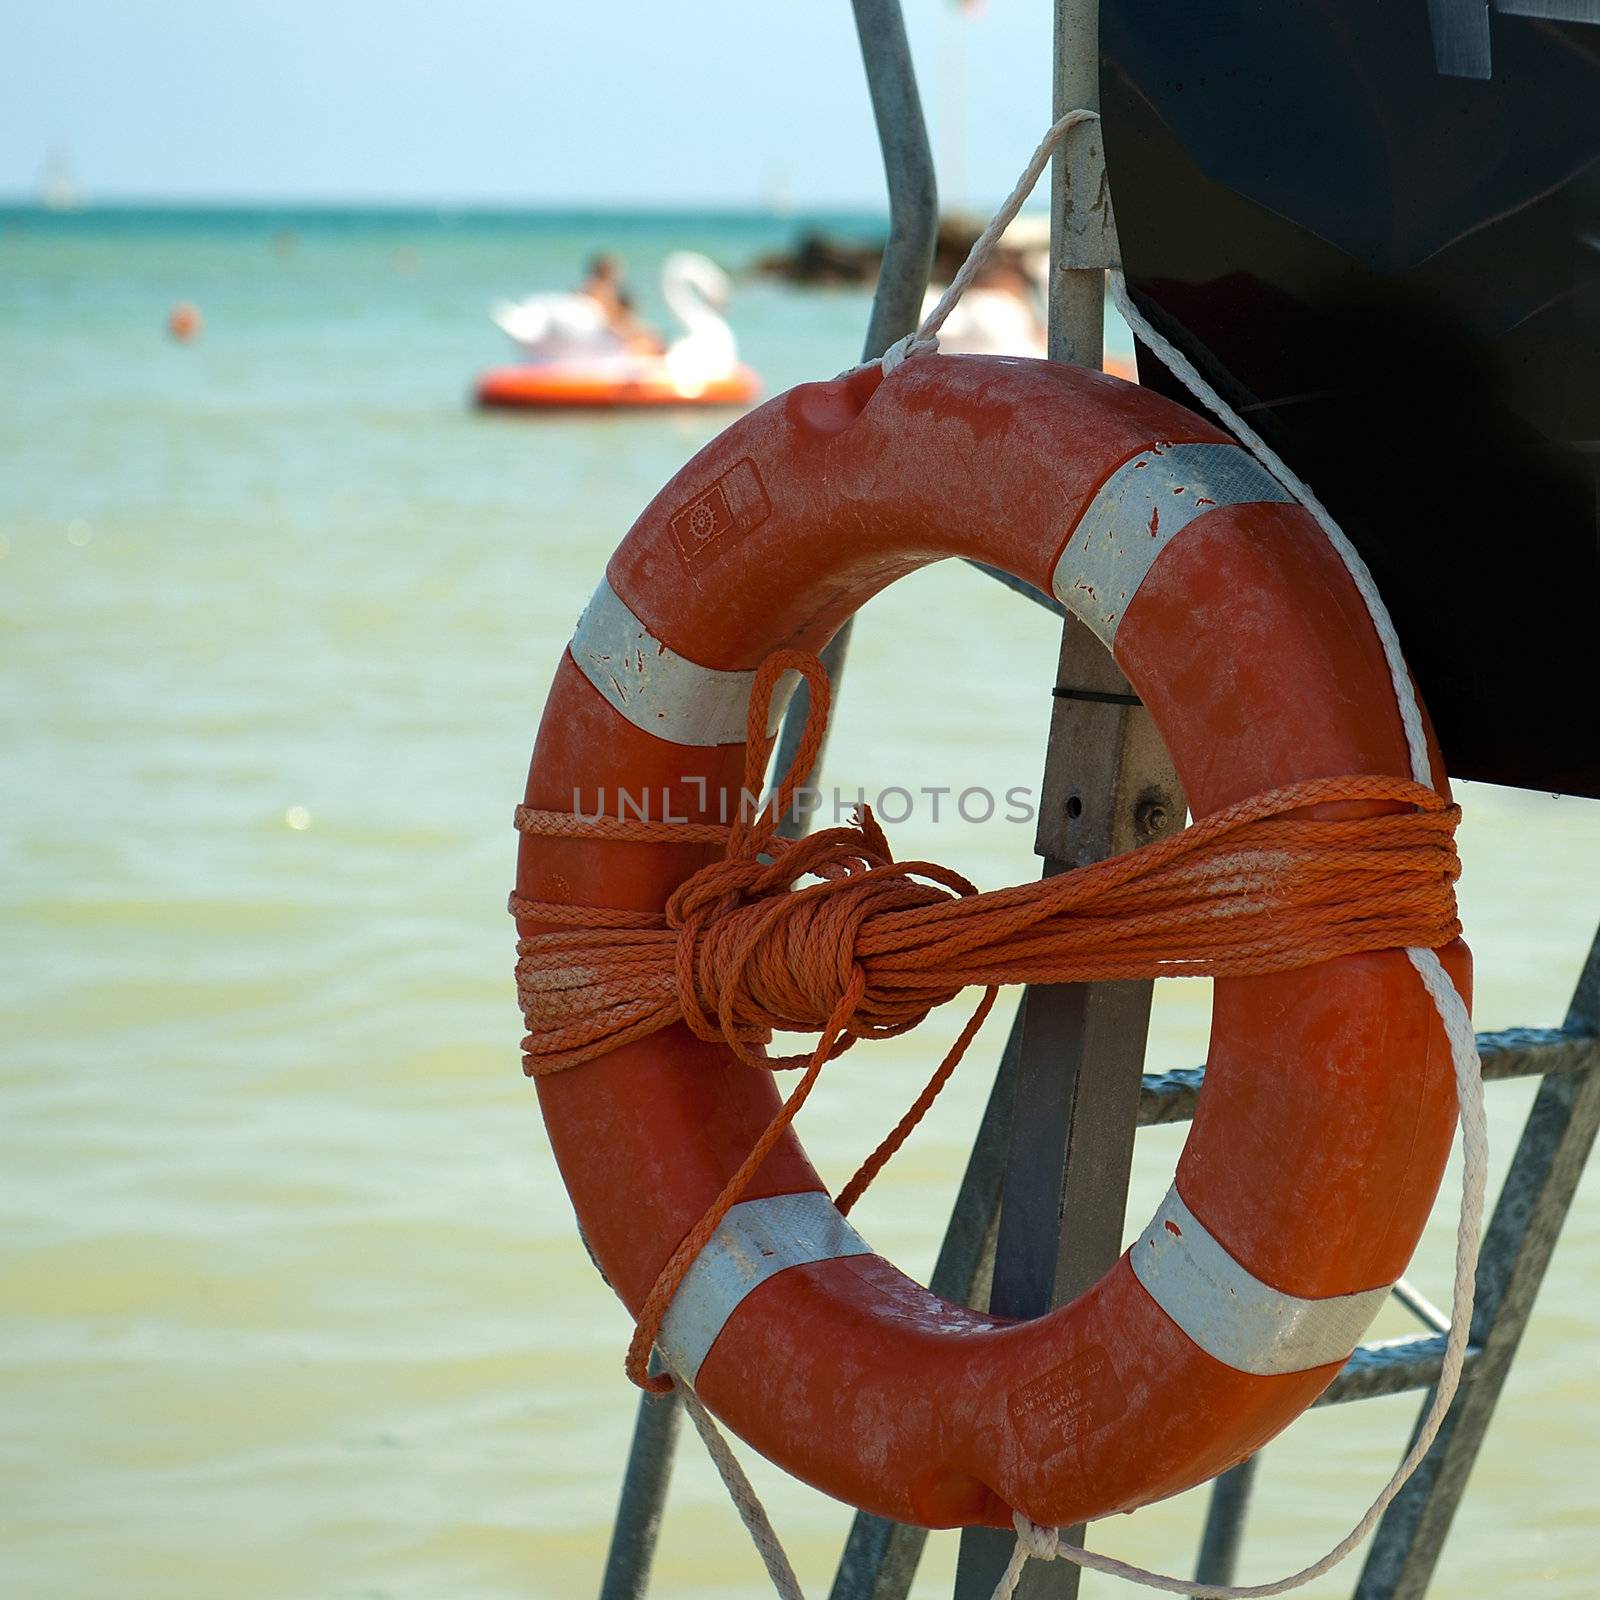 a lifebuoy on the beach on a sunny day